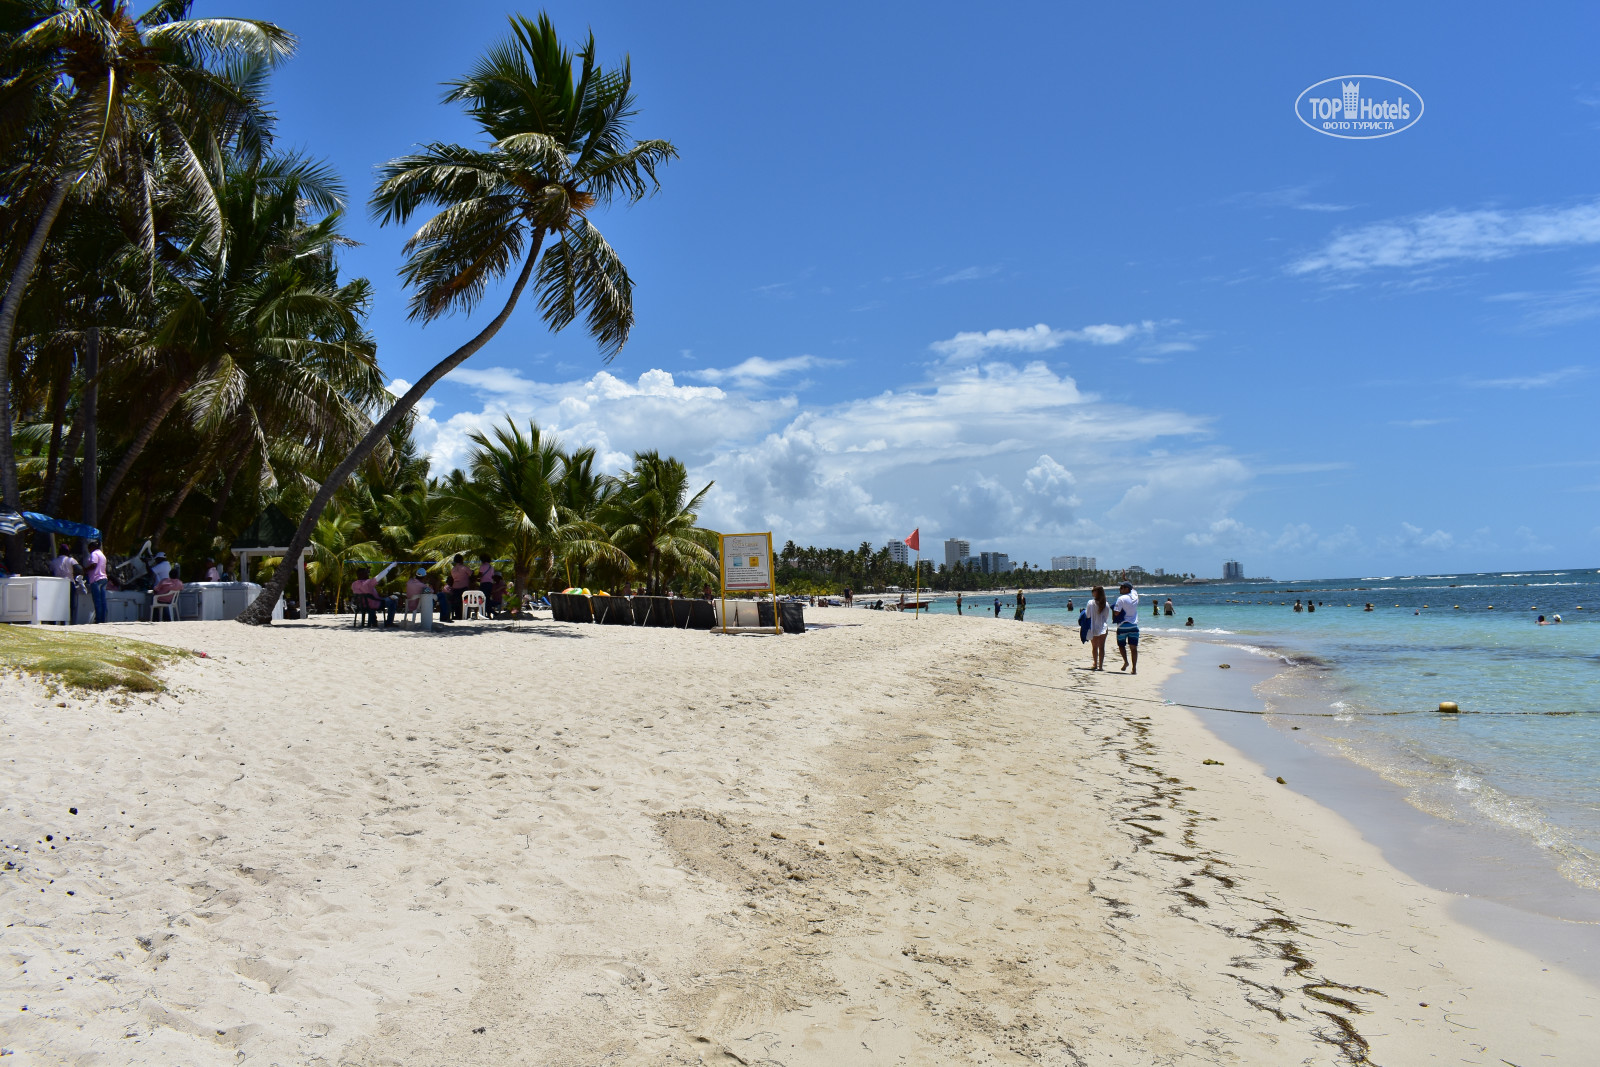 Costa caribe beach 4 венесуэла. Costa Caribe Beach Hotel Resort 4 Венесуэла. Costa Caribe Beach 3 Венесуэла.